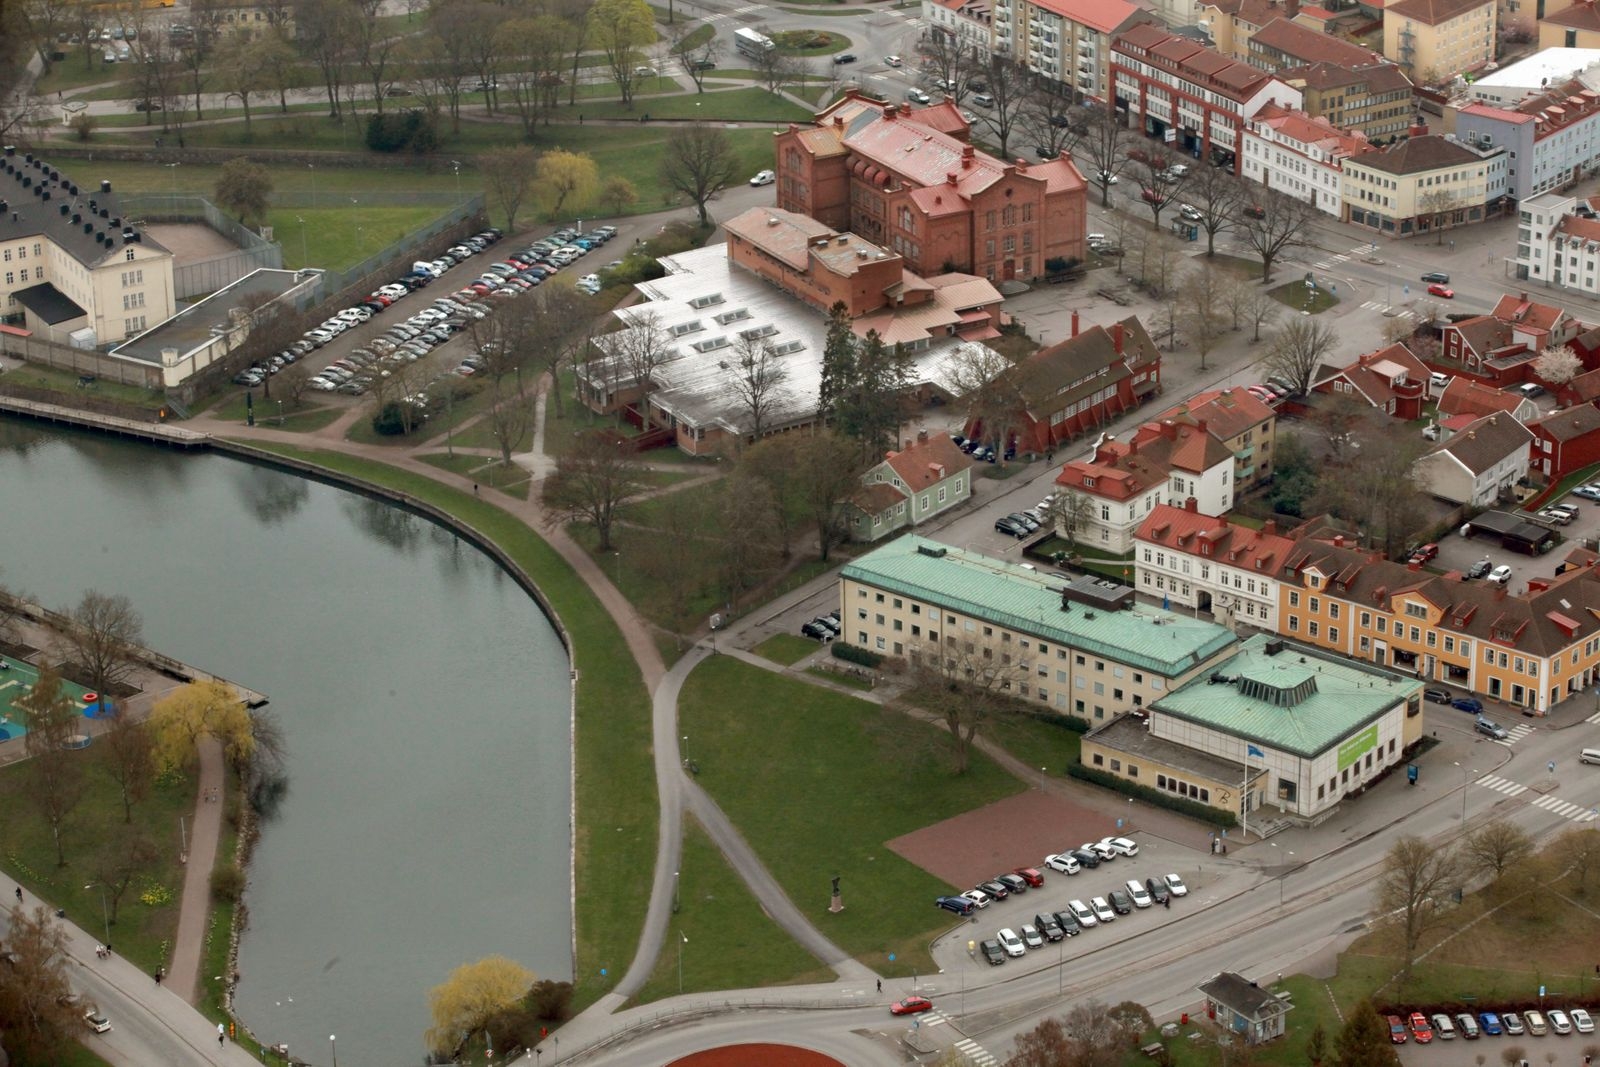 Här vid Systraströmmen, mellan Sveaplan, fängelset och Tullslätten, ska det nya kulturkvarteret etableras. Posthuset till höger med grönt tak.